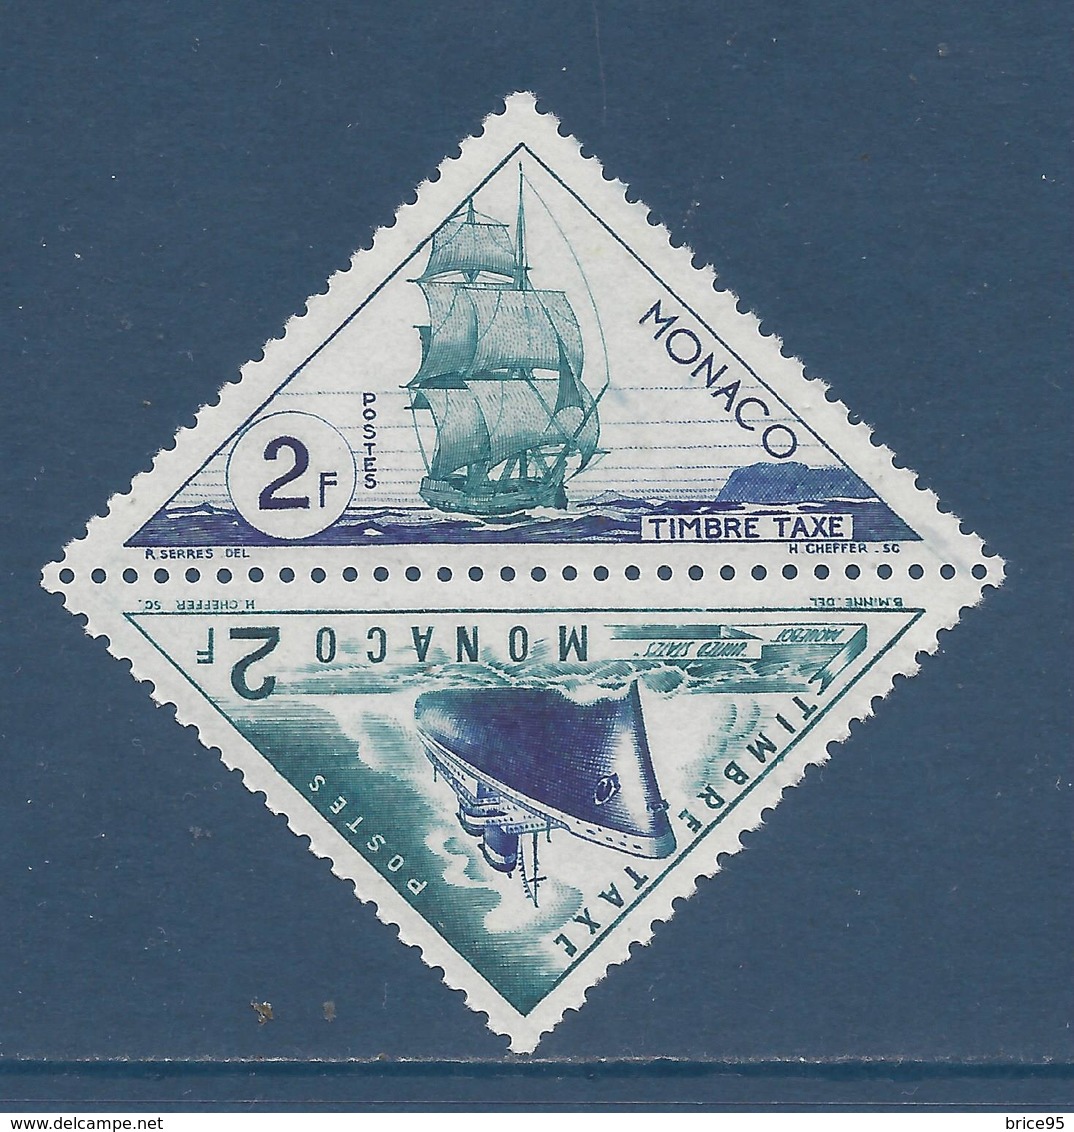 Monaco Taxe - YT N° 40 Et 41 - Neuf Avec Charnière - 1953 - Postage Due